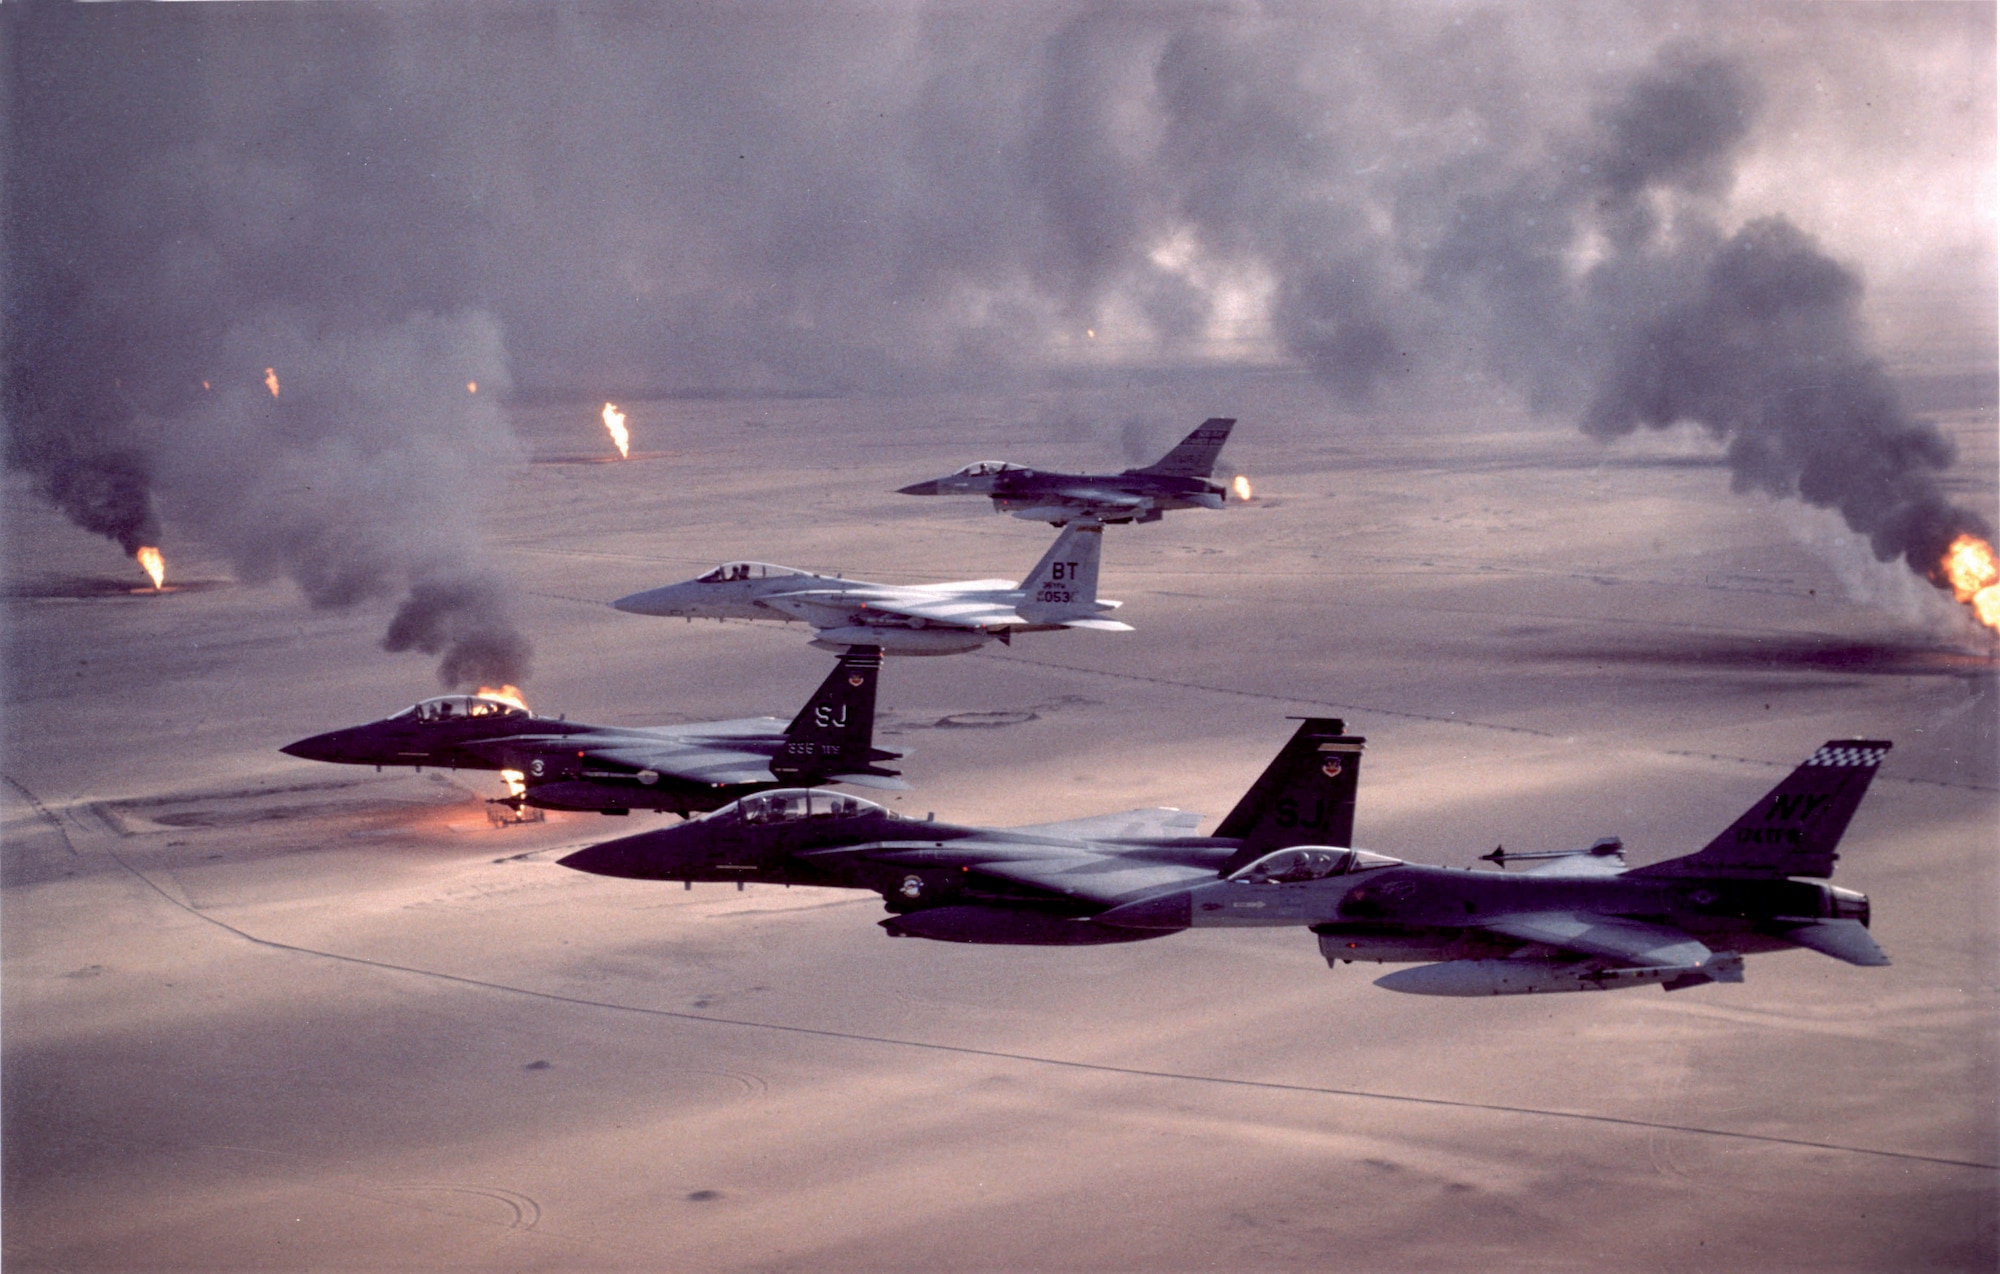 jets flying over burning oil fields